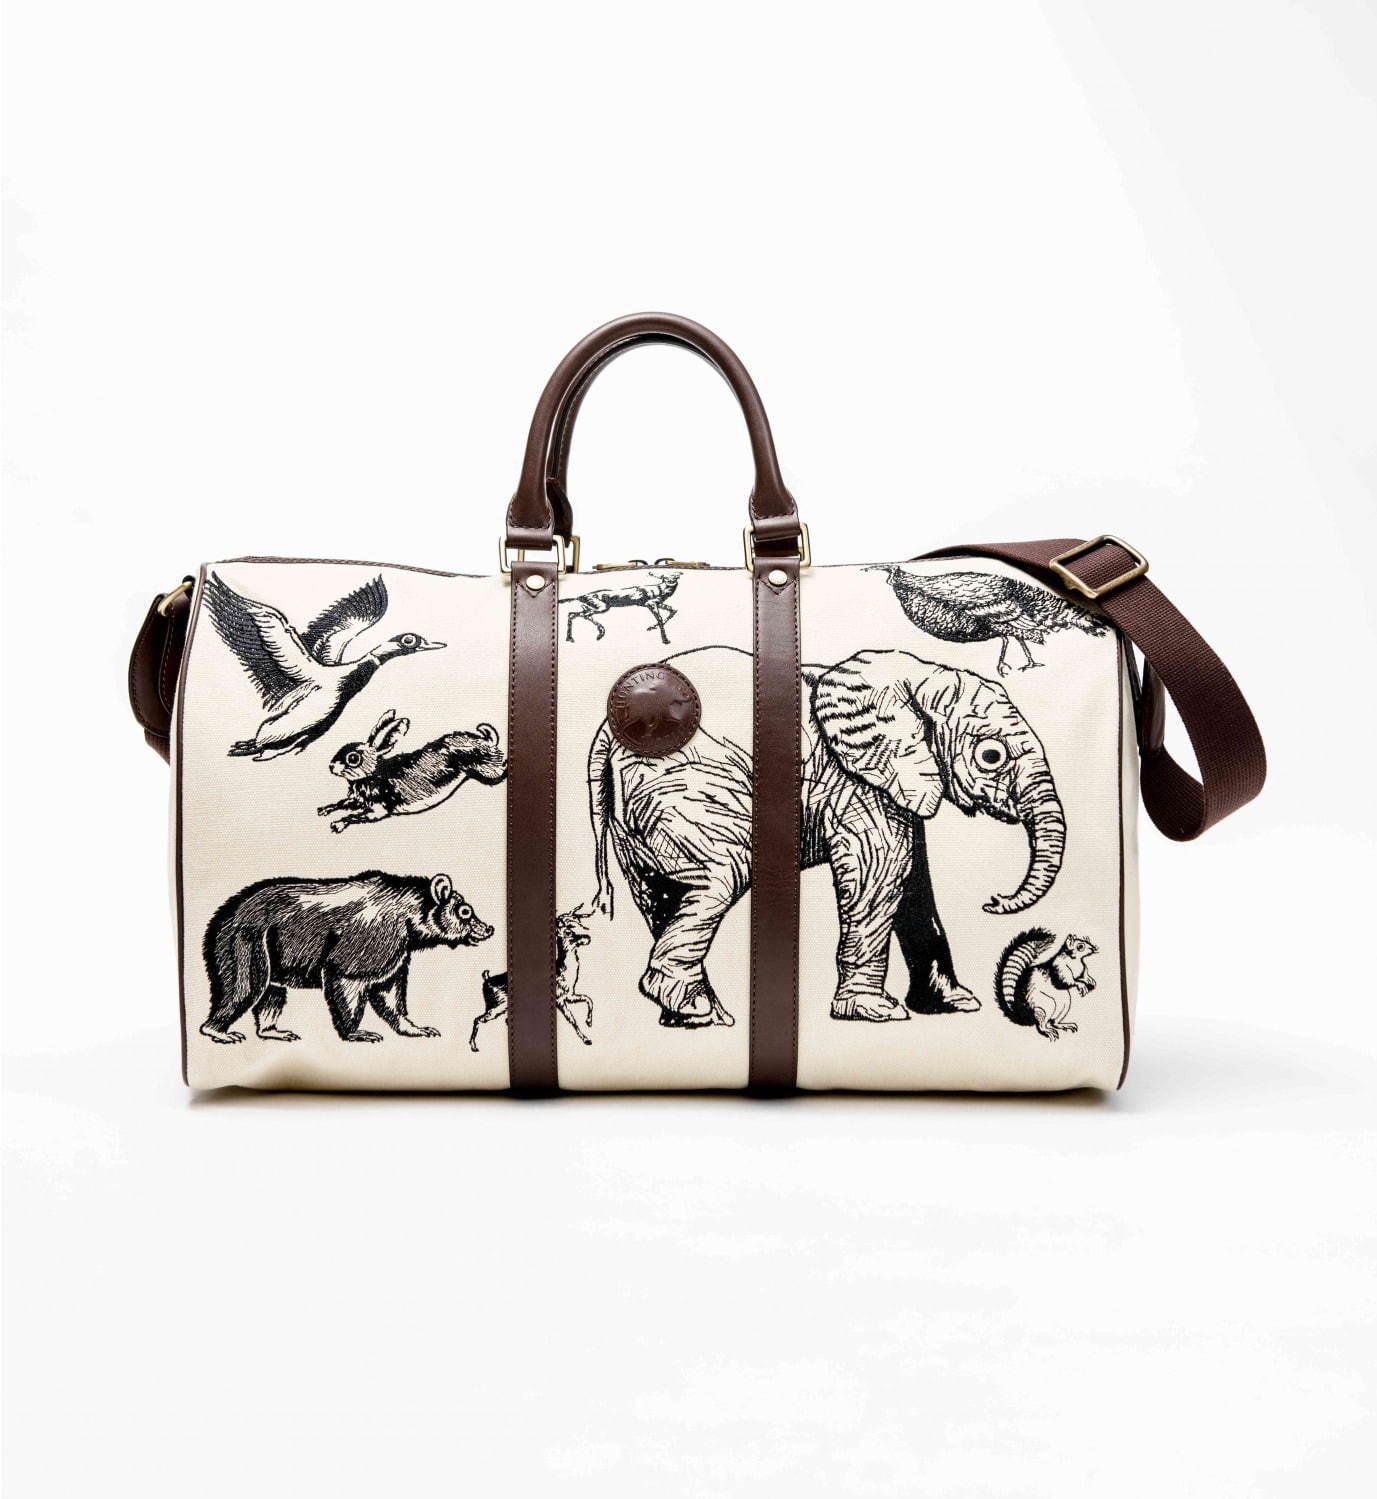 ハンティング・ワールドから象やウサギなど“動物”刺繍のバッグ、米